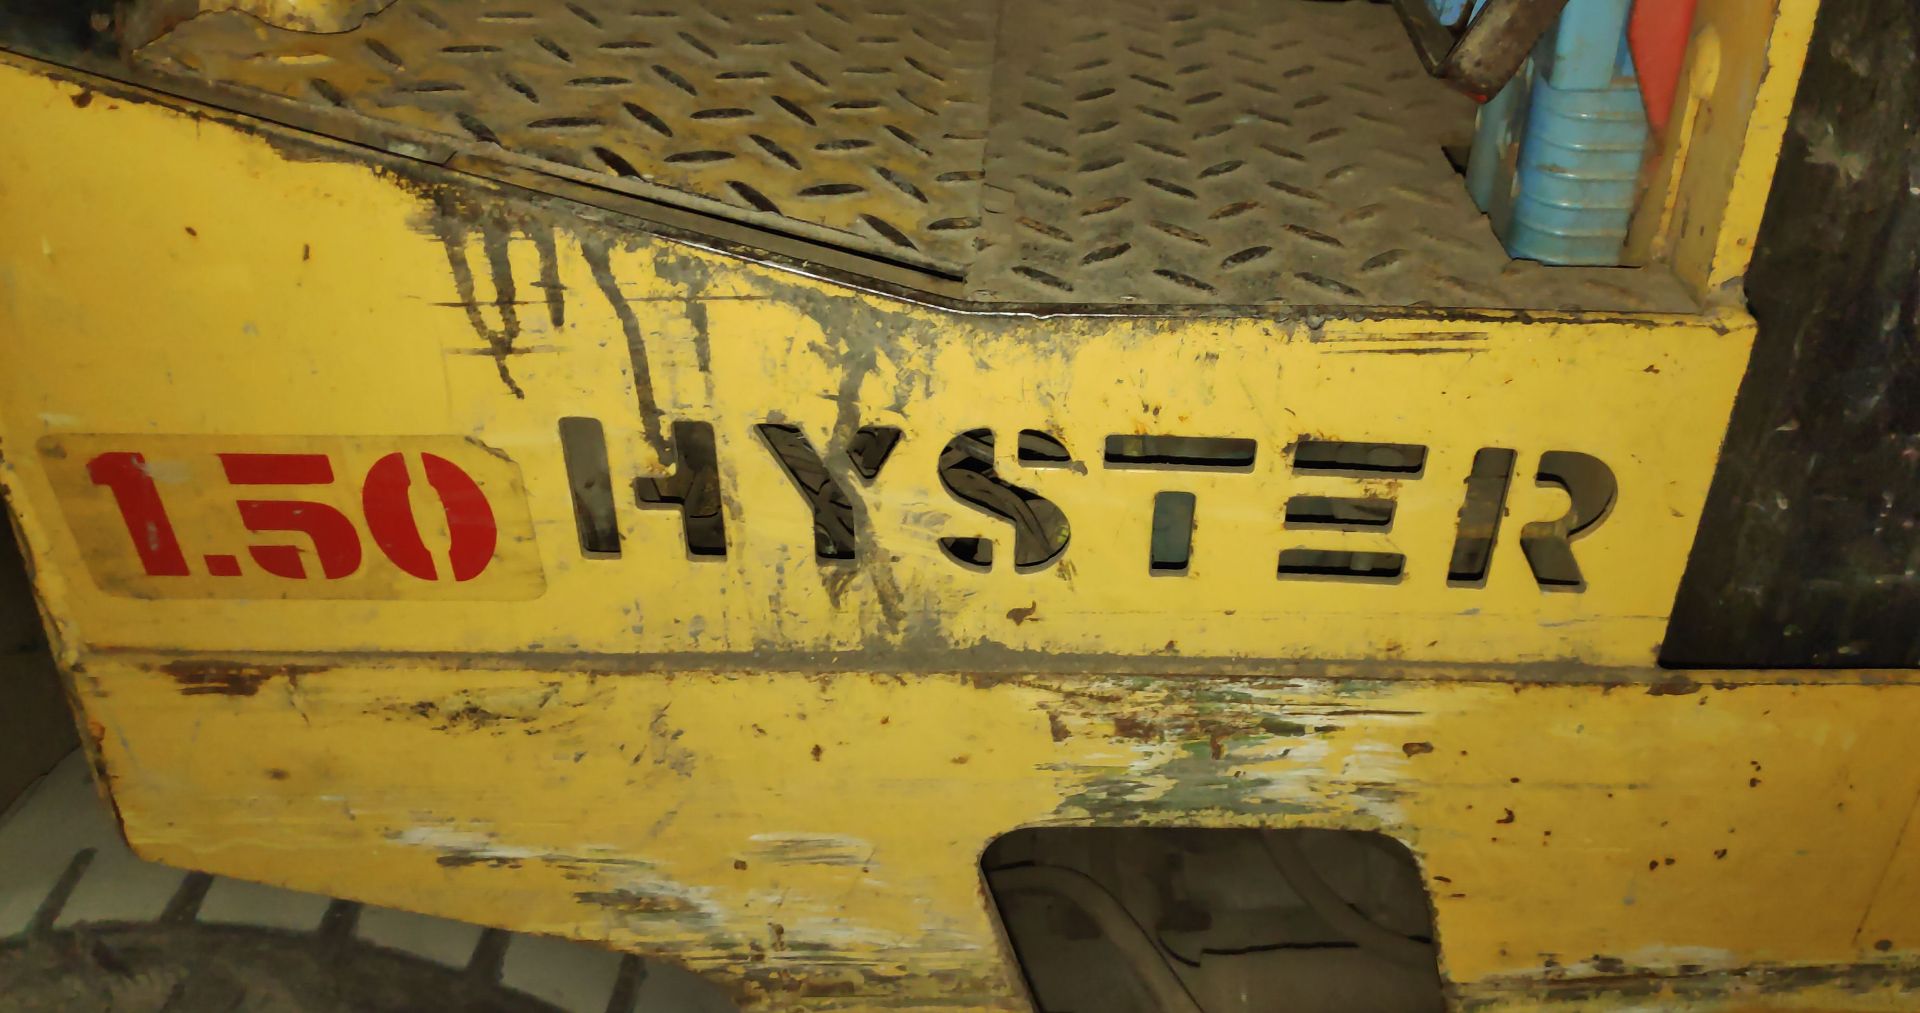 1988 Hyster 1200Kg Electric Counterbalance Forklift Truck - 1451 Hours - PLEASE READ DESCRIPTION - - Bild 4 aus 28